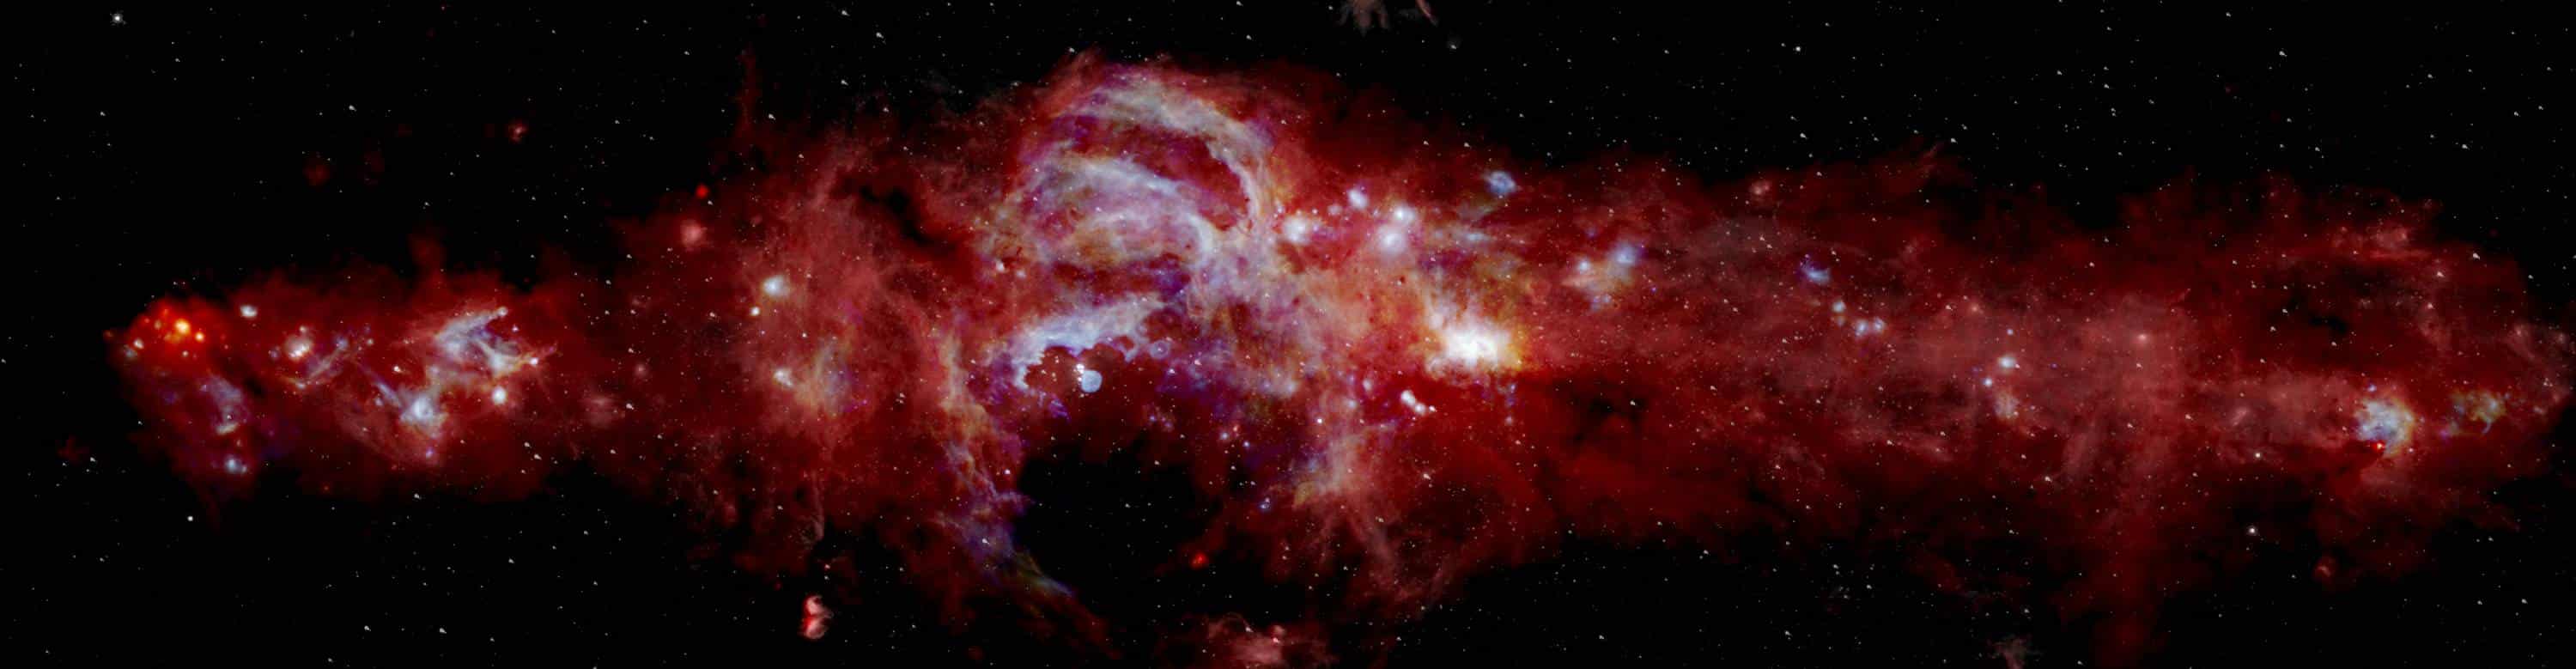 Imagem infravermelha do centro da Via Láctea, feita com o Sofia. Foto: Nasa